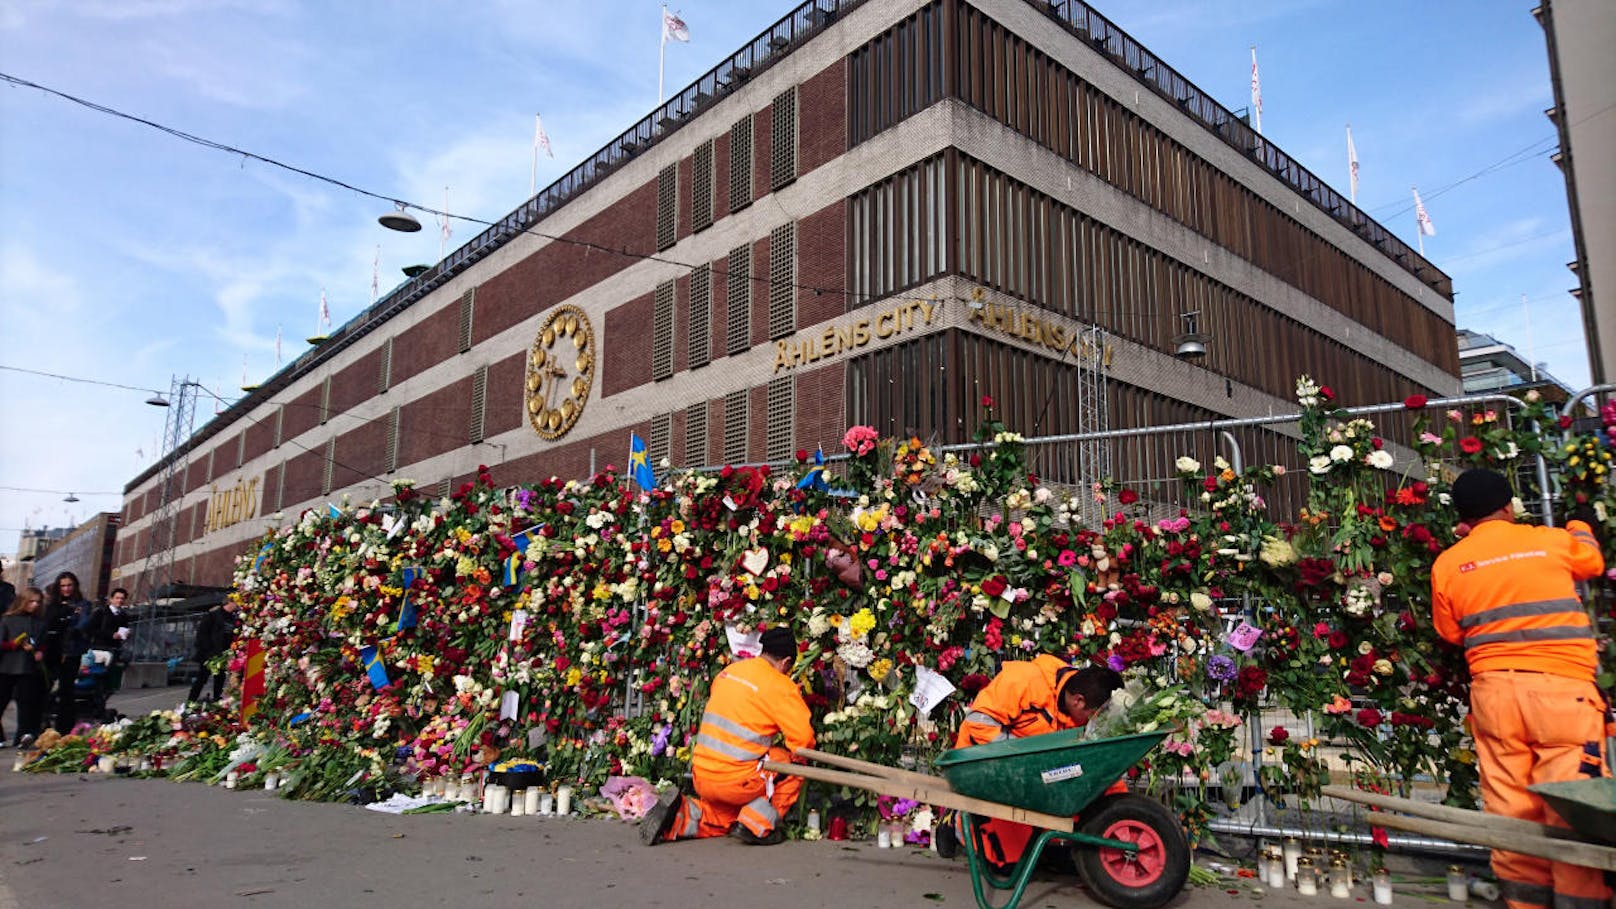 Der Ort des Anschlags, das Kaufhaus Ahlens in Stockholm, war am Sonntag mit Blumen bedeckt.